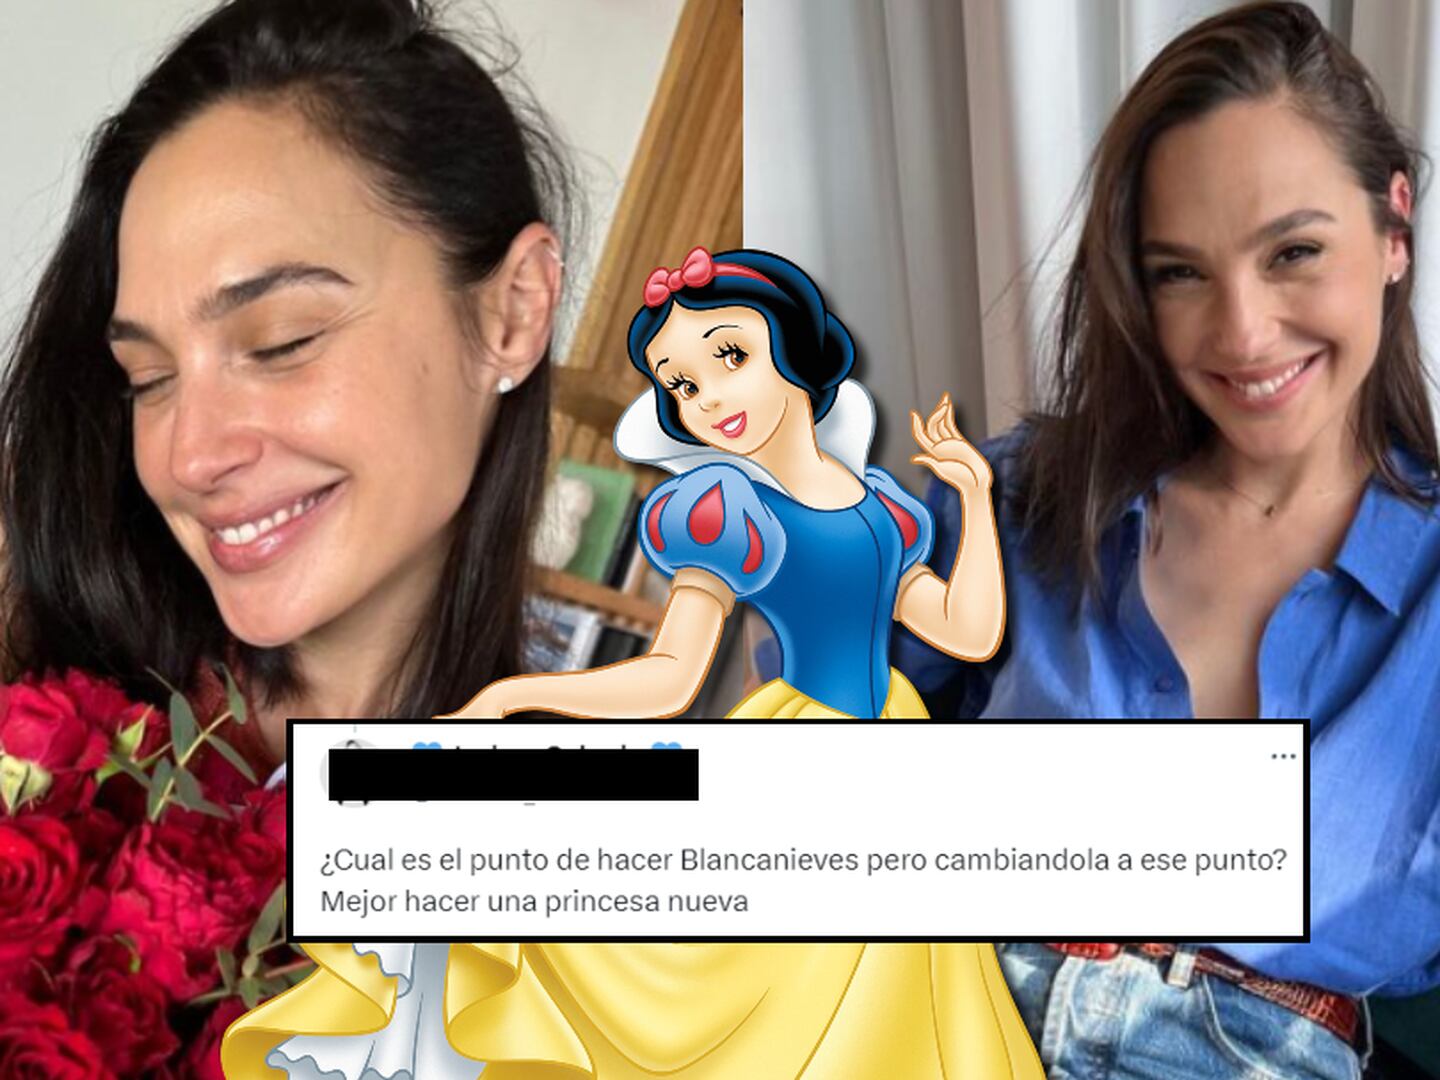 Gal Gadot será a Rainha Má do live-action de Branca de Neve da Disney